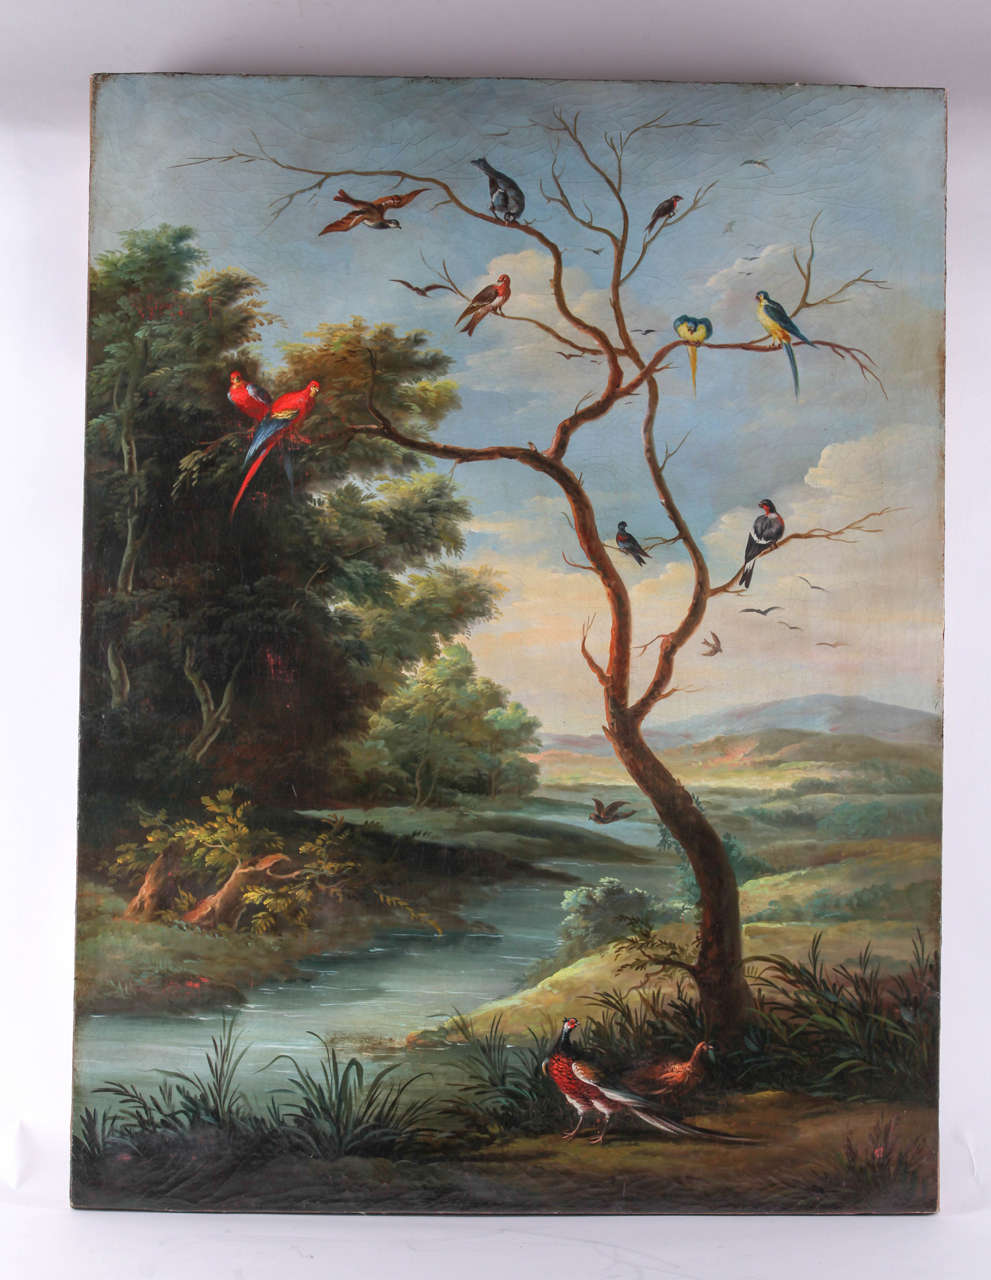 Jan Van Kassel I (attr.) River landscape with birds on a tree, oil on canvas, 17th Century

Jan Van Kessel I (Antwerp 1626-1679)